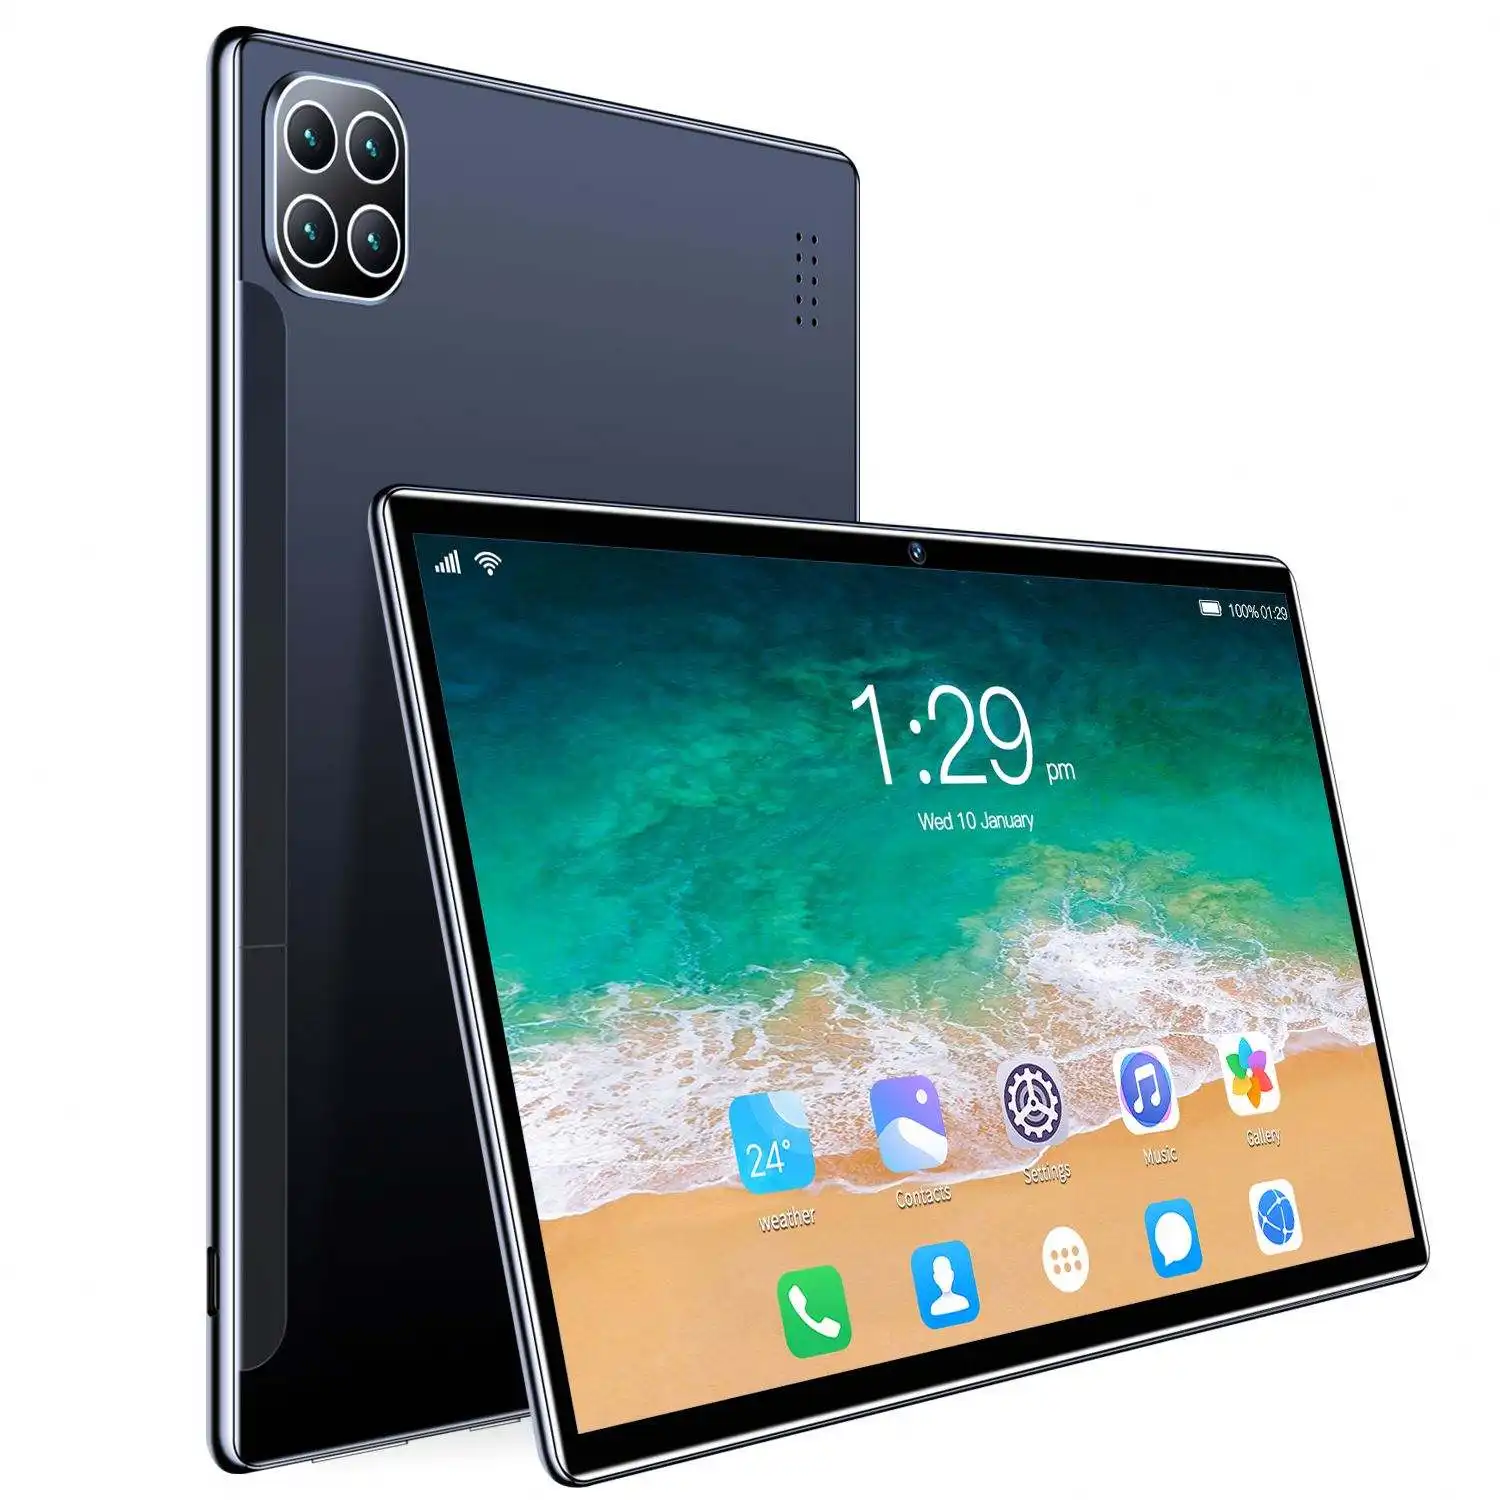 Produits chauds vente directe d'usine 100% nouvelle société Sumsang 120HZ Version Wifi étude travail tablette Original S8 tablette